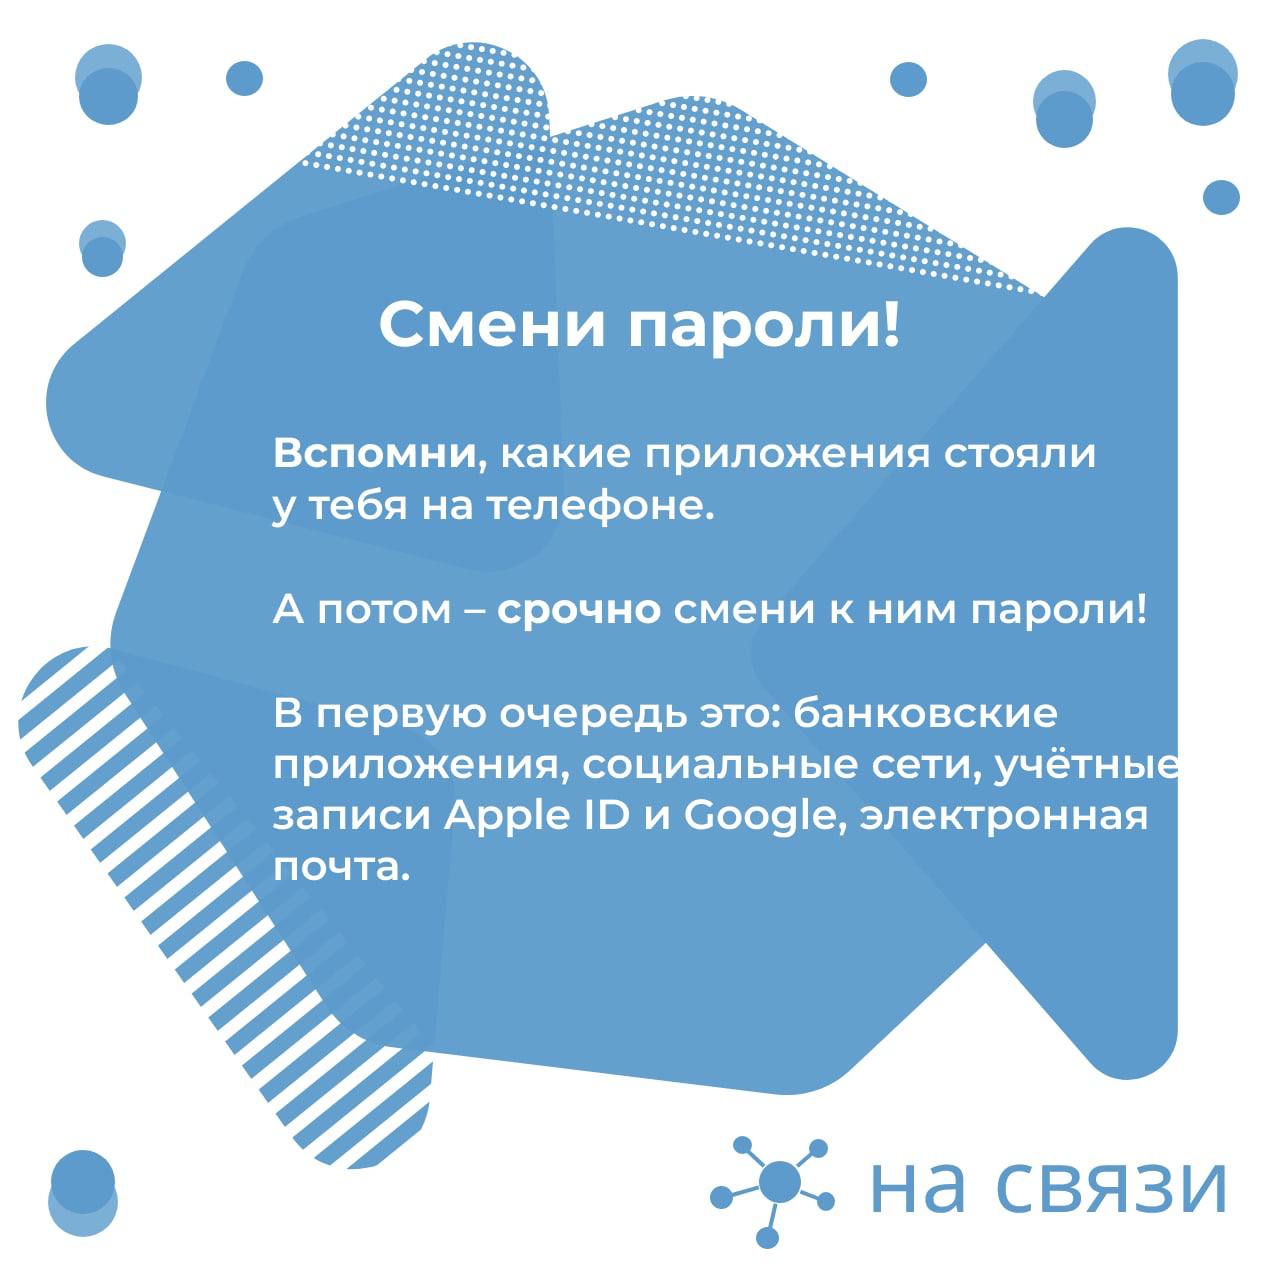 Телефон службы поддержки телеграмм в россии бесплатный фото 2